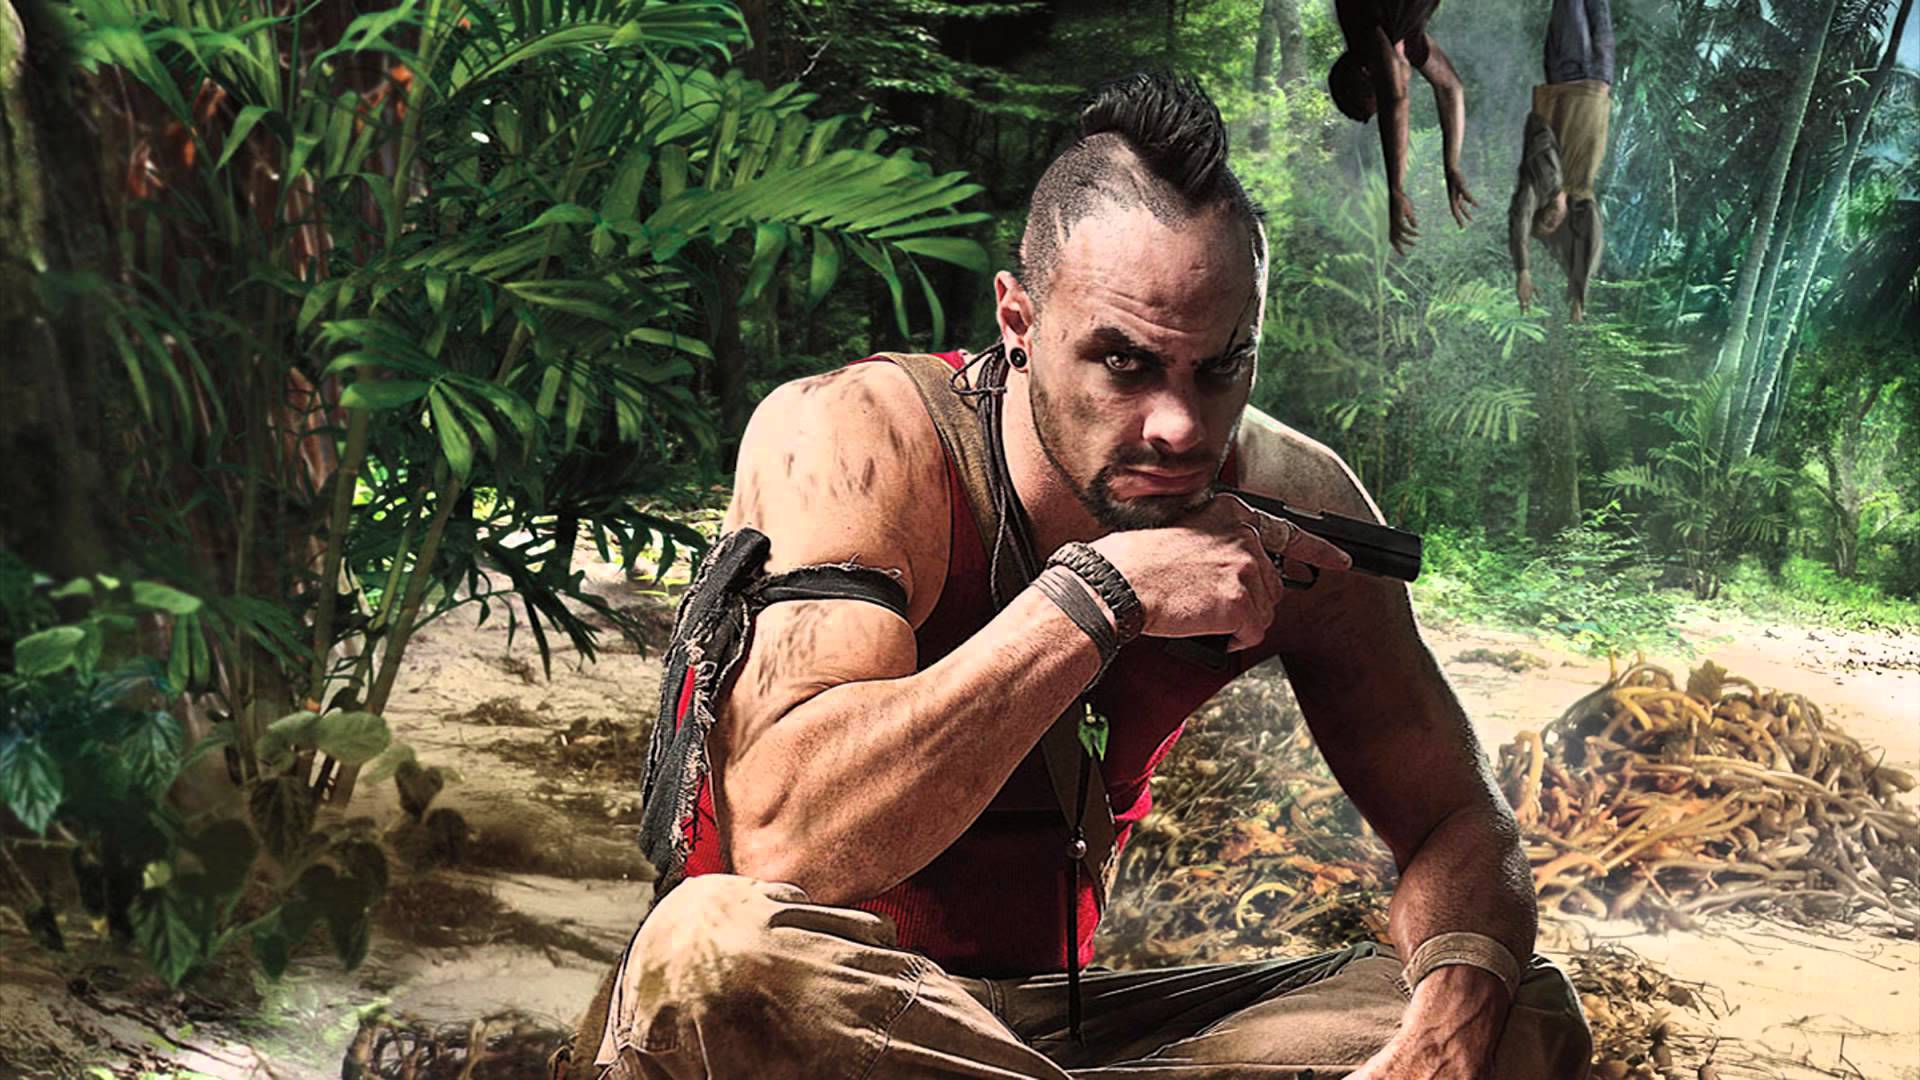 Far Cry 3'ün Sevilen Karakteri Vaas Montenegro Geri Dönebilir - Technopat